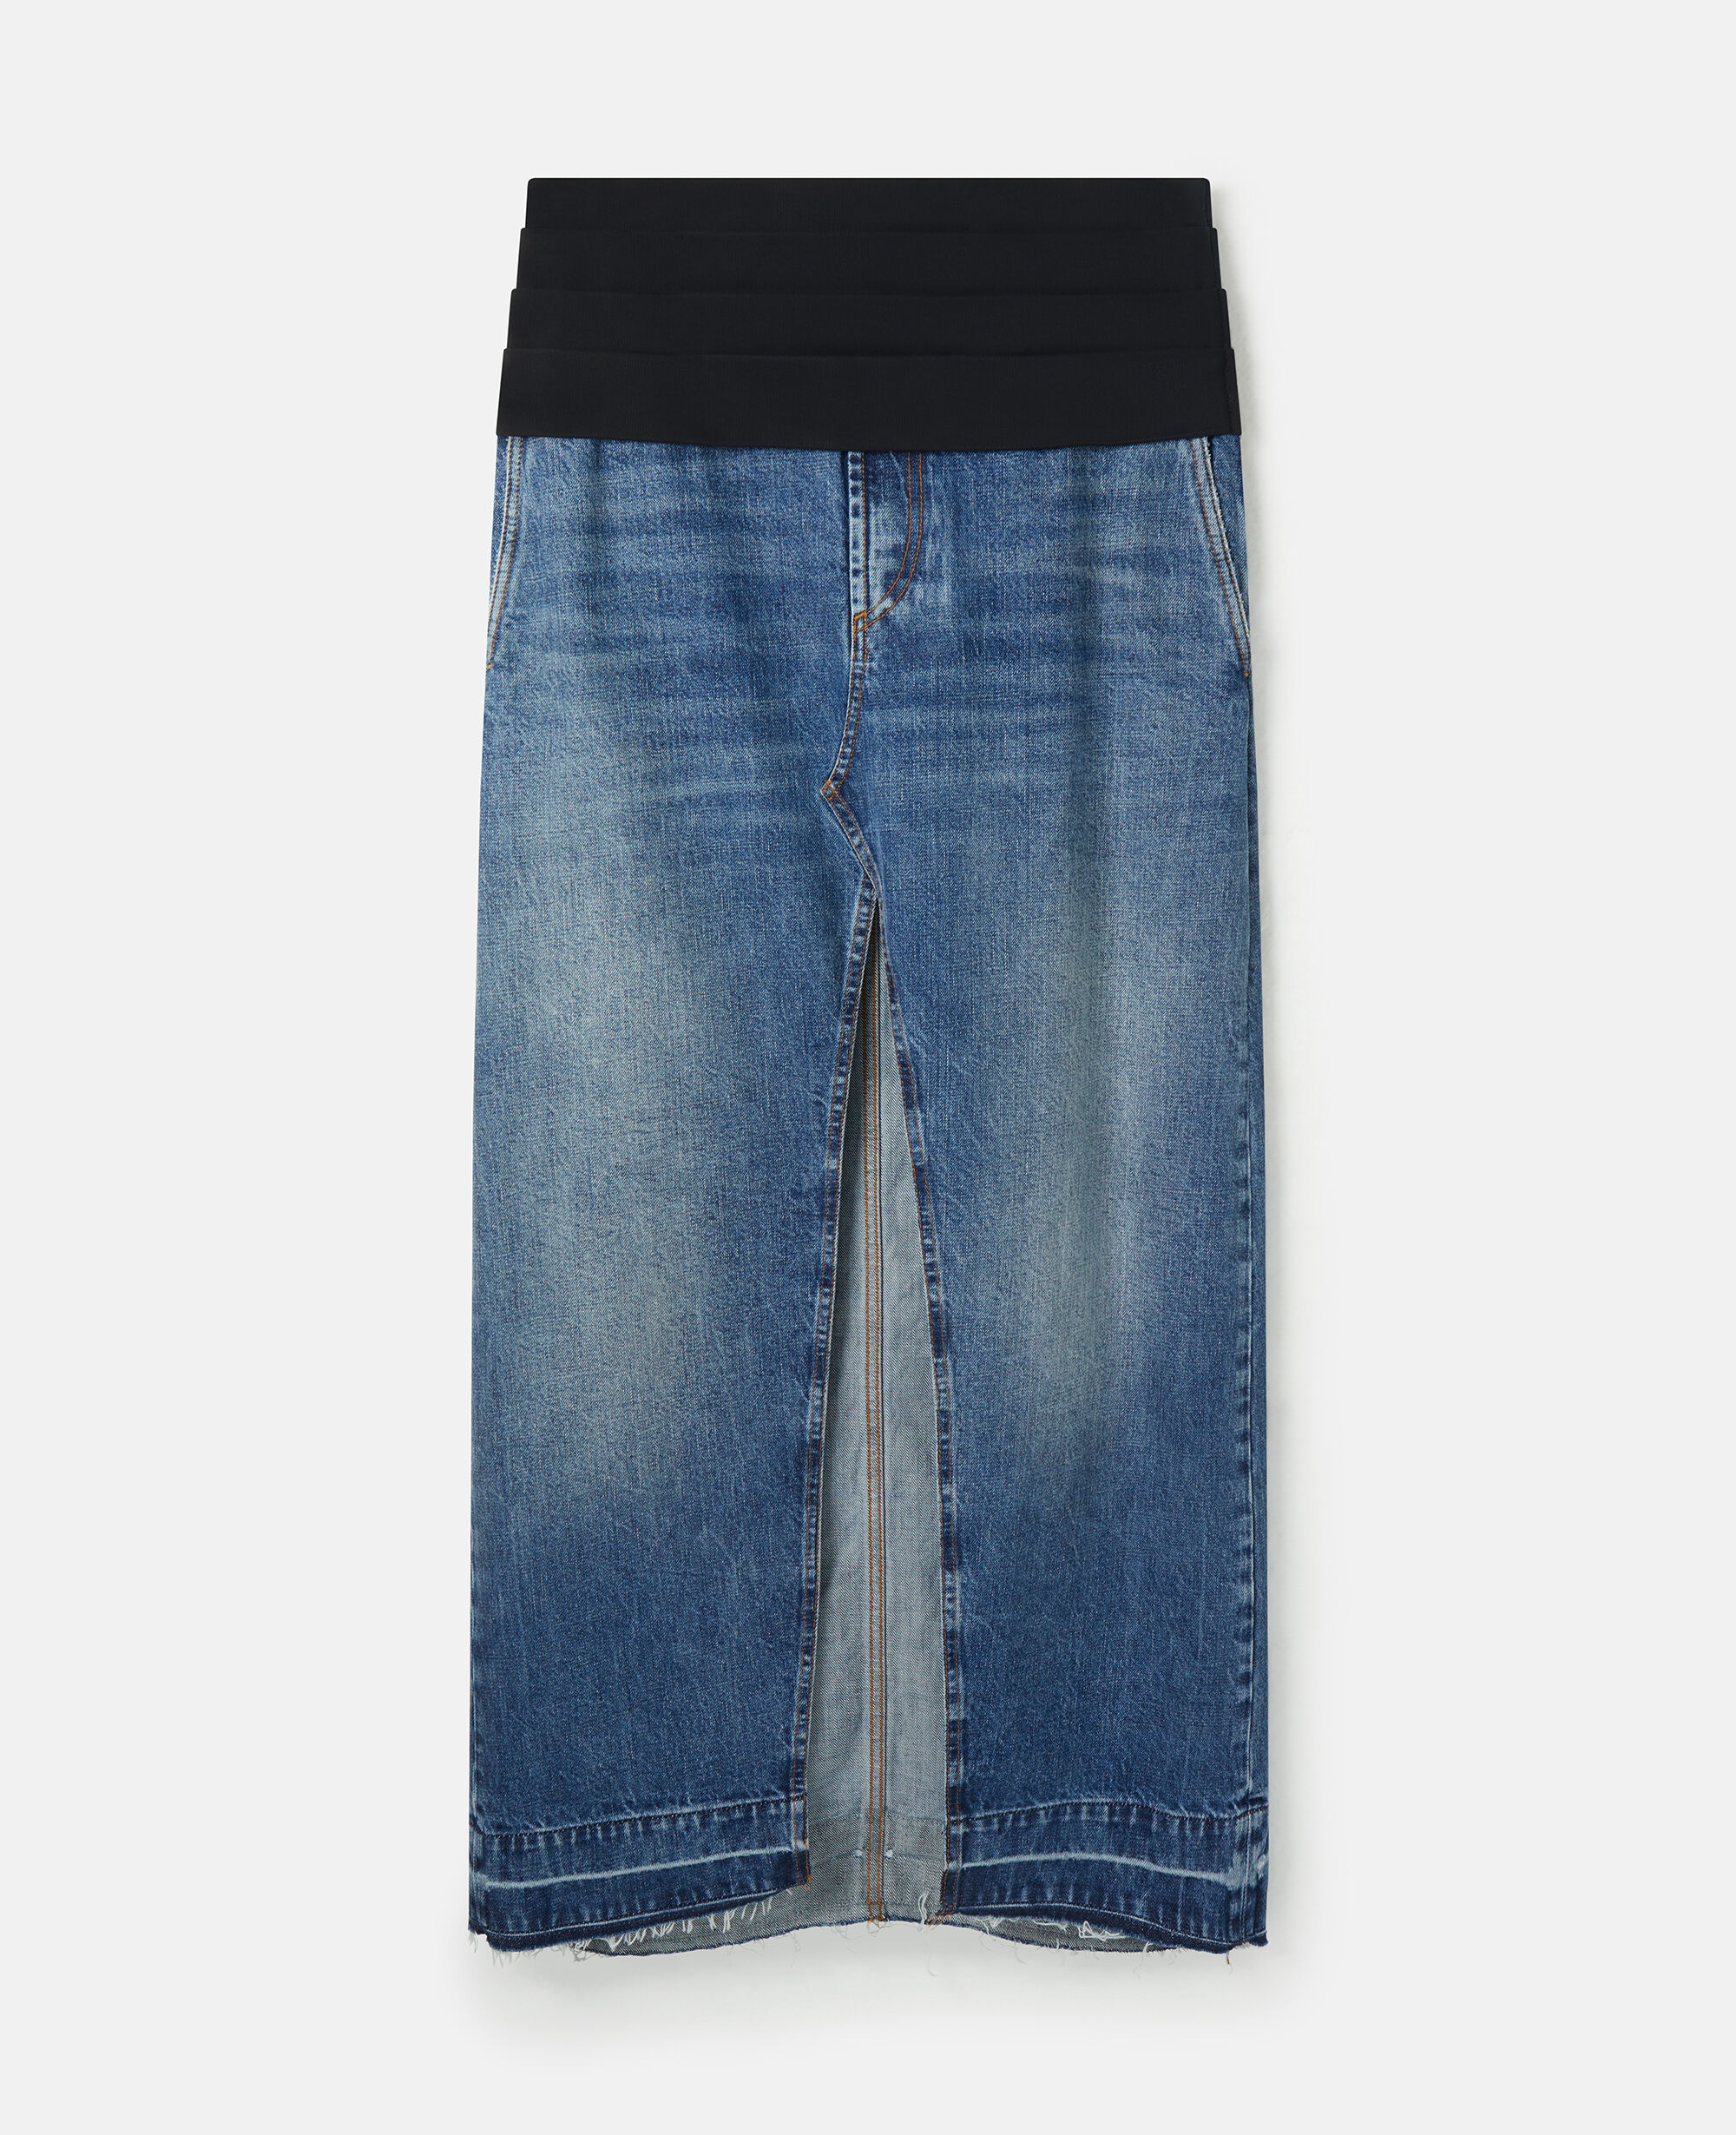 約78cmウエストStella McCartney Vintage Denim Skirt - ロングスカート